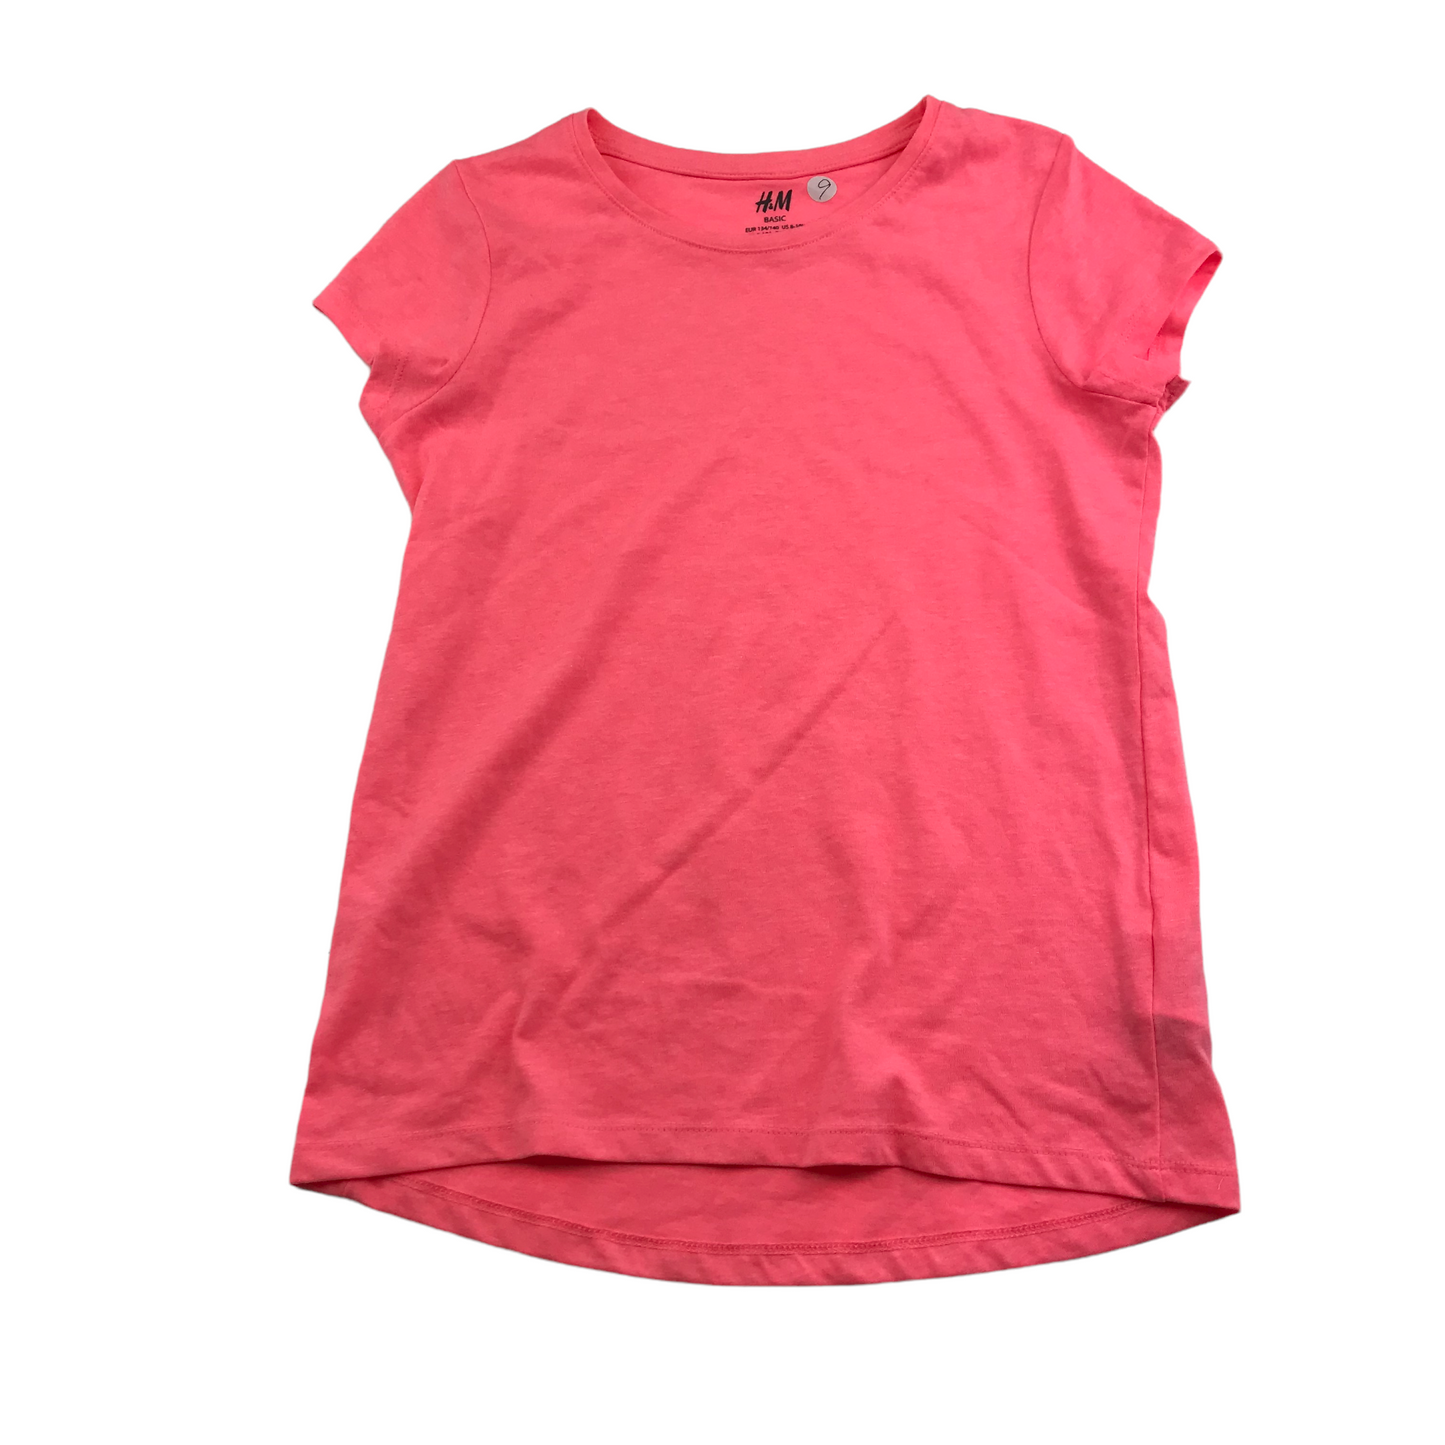 H&M Pink Plain T-shirt Age 9